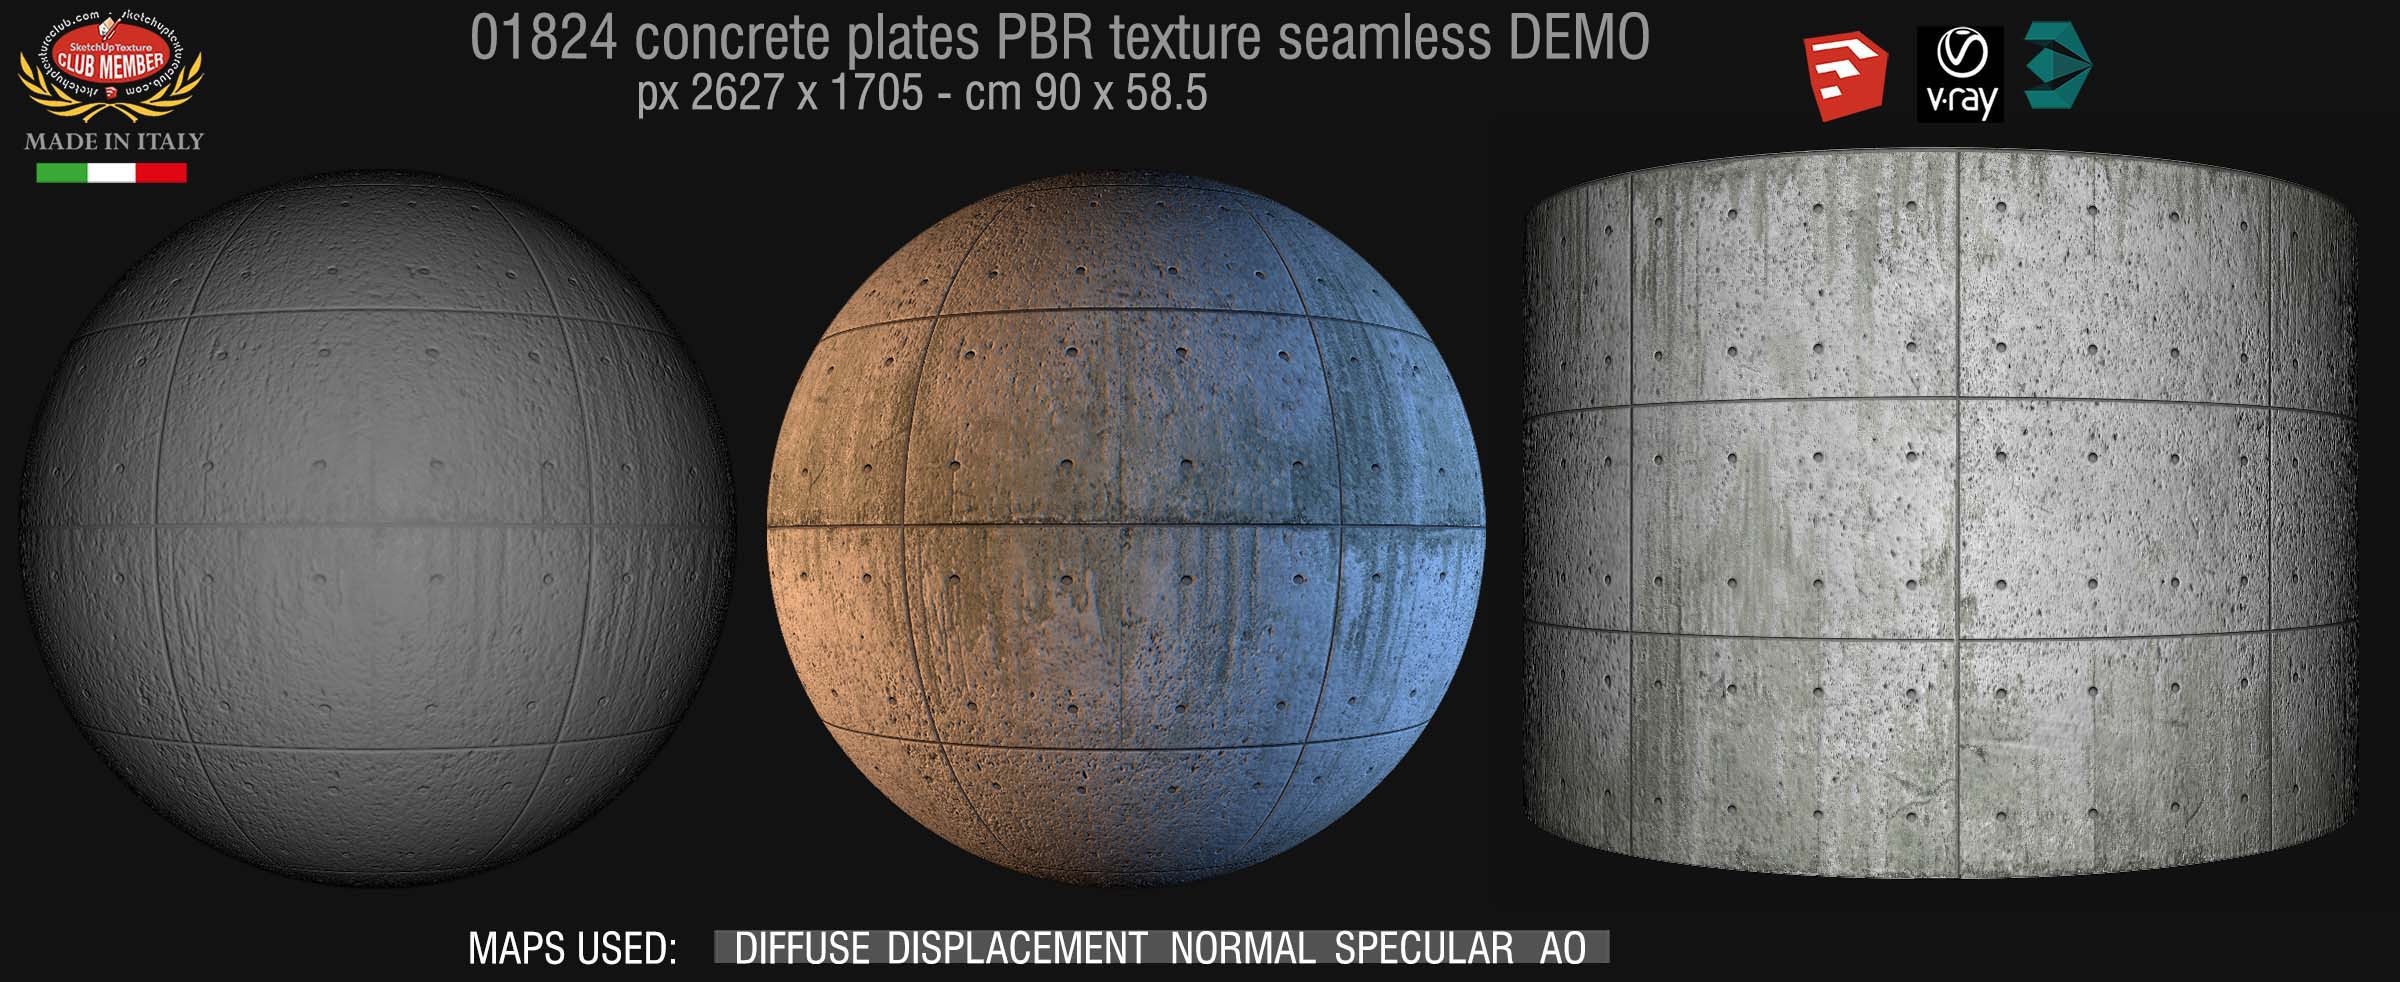 01824 Tadao Ando concrete plates PBR texture seamless DEMO